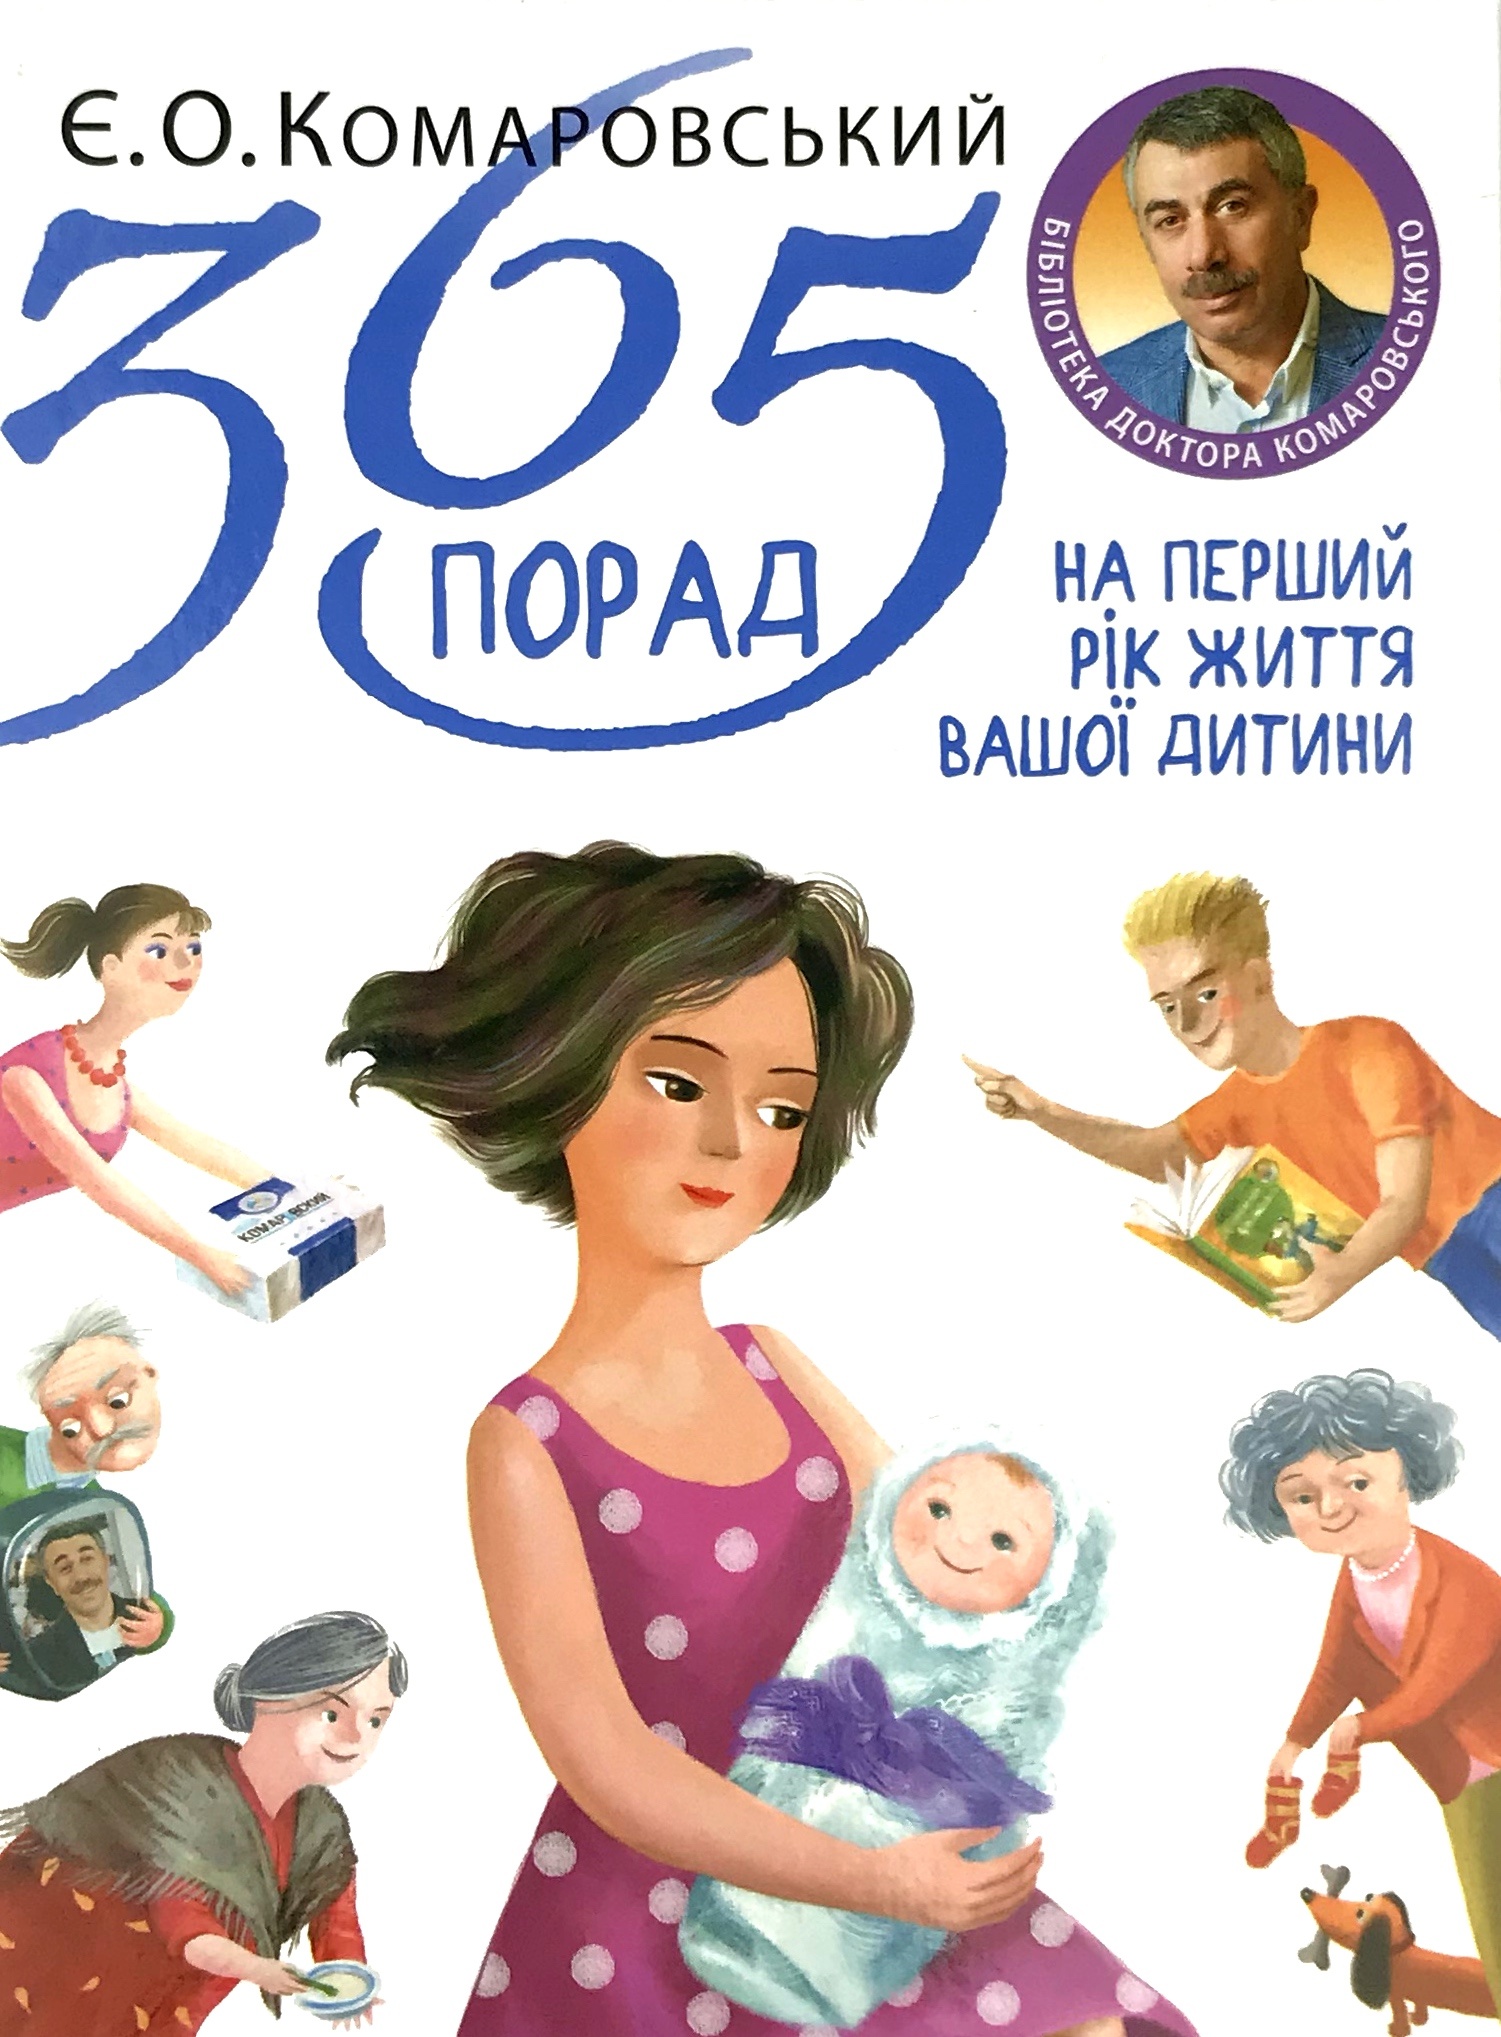 365 порад на перший рік життя вашої дитини. Автор — Евгений Комаровский. 